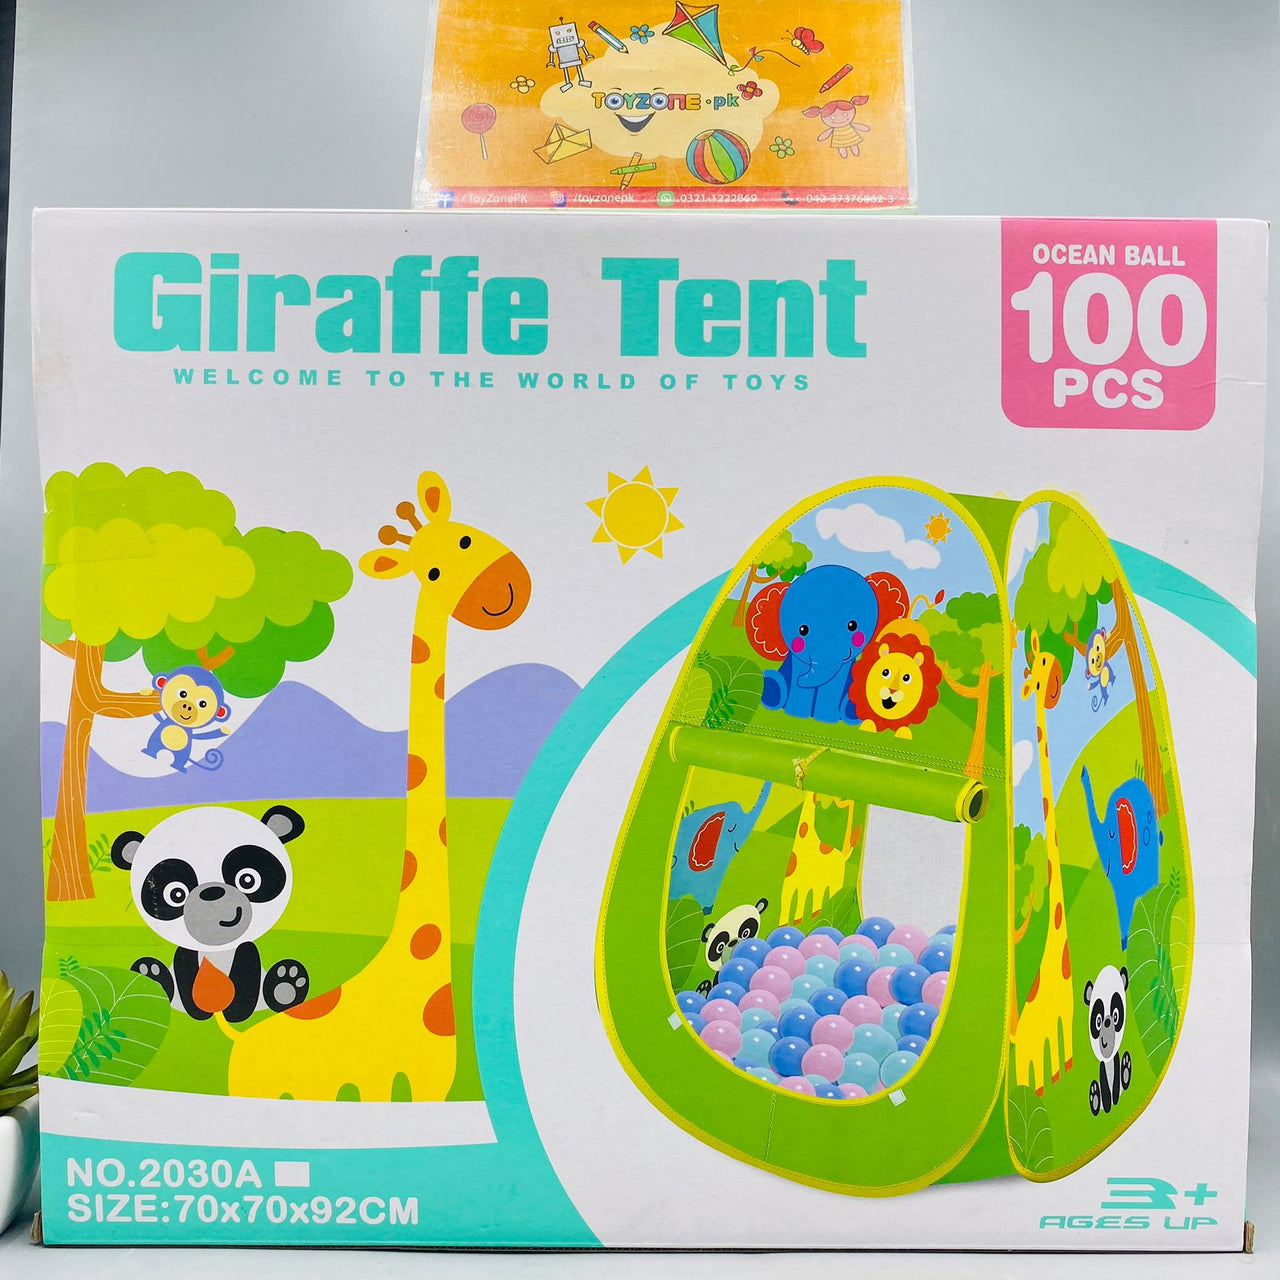 Giraffe Tent House With 100 Ocean Balls